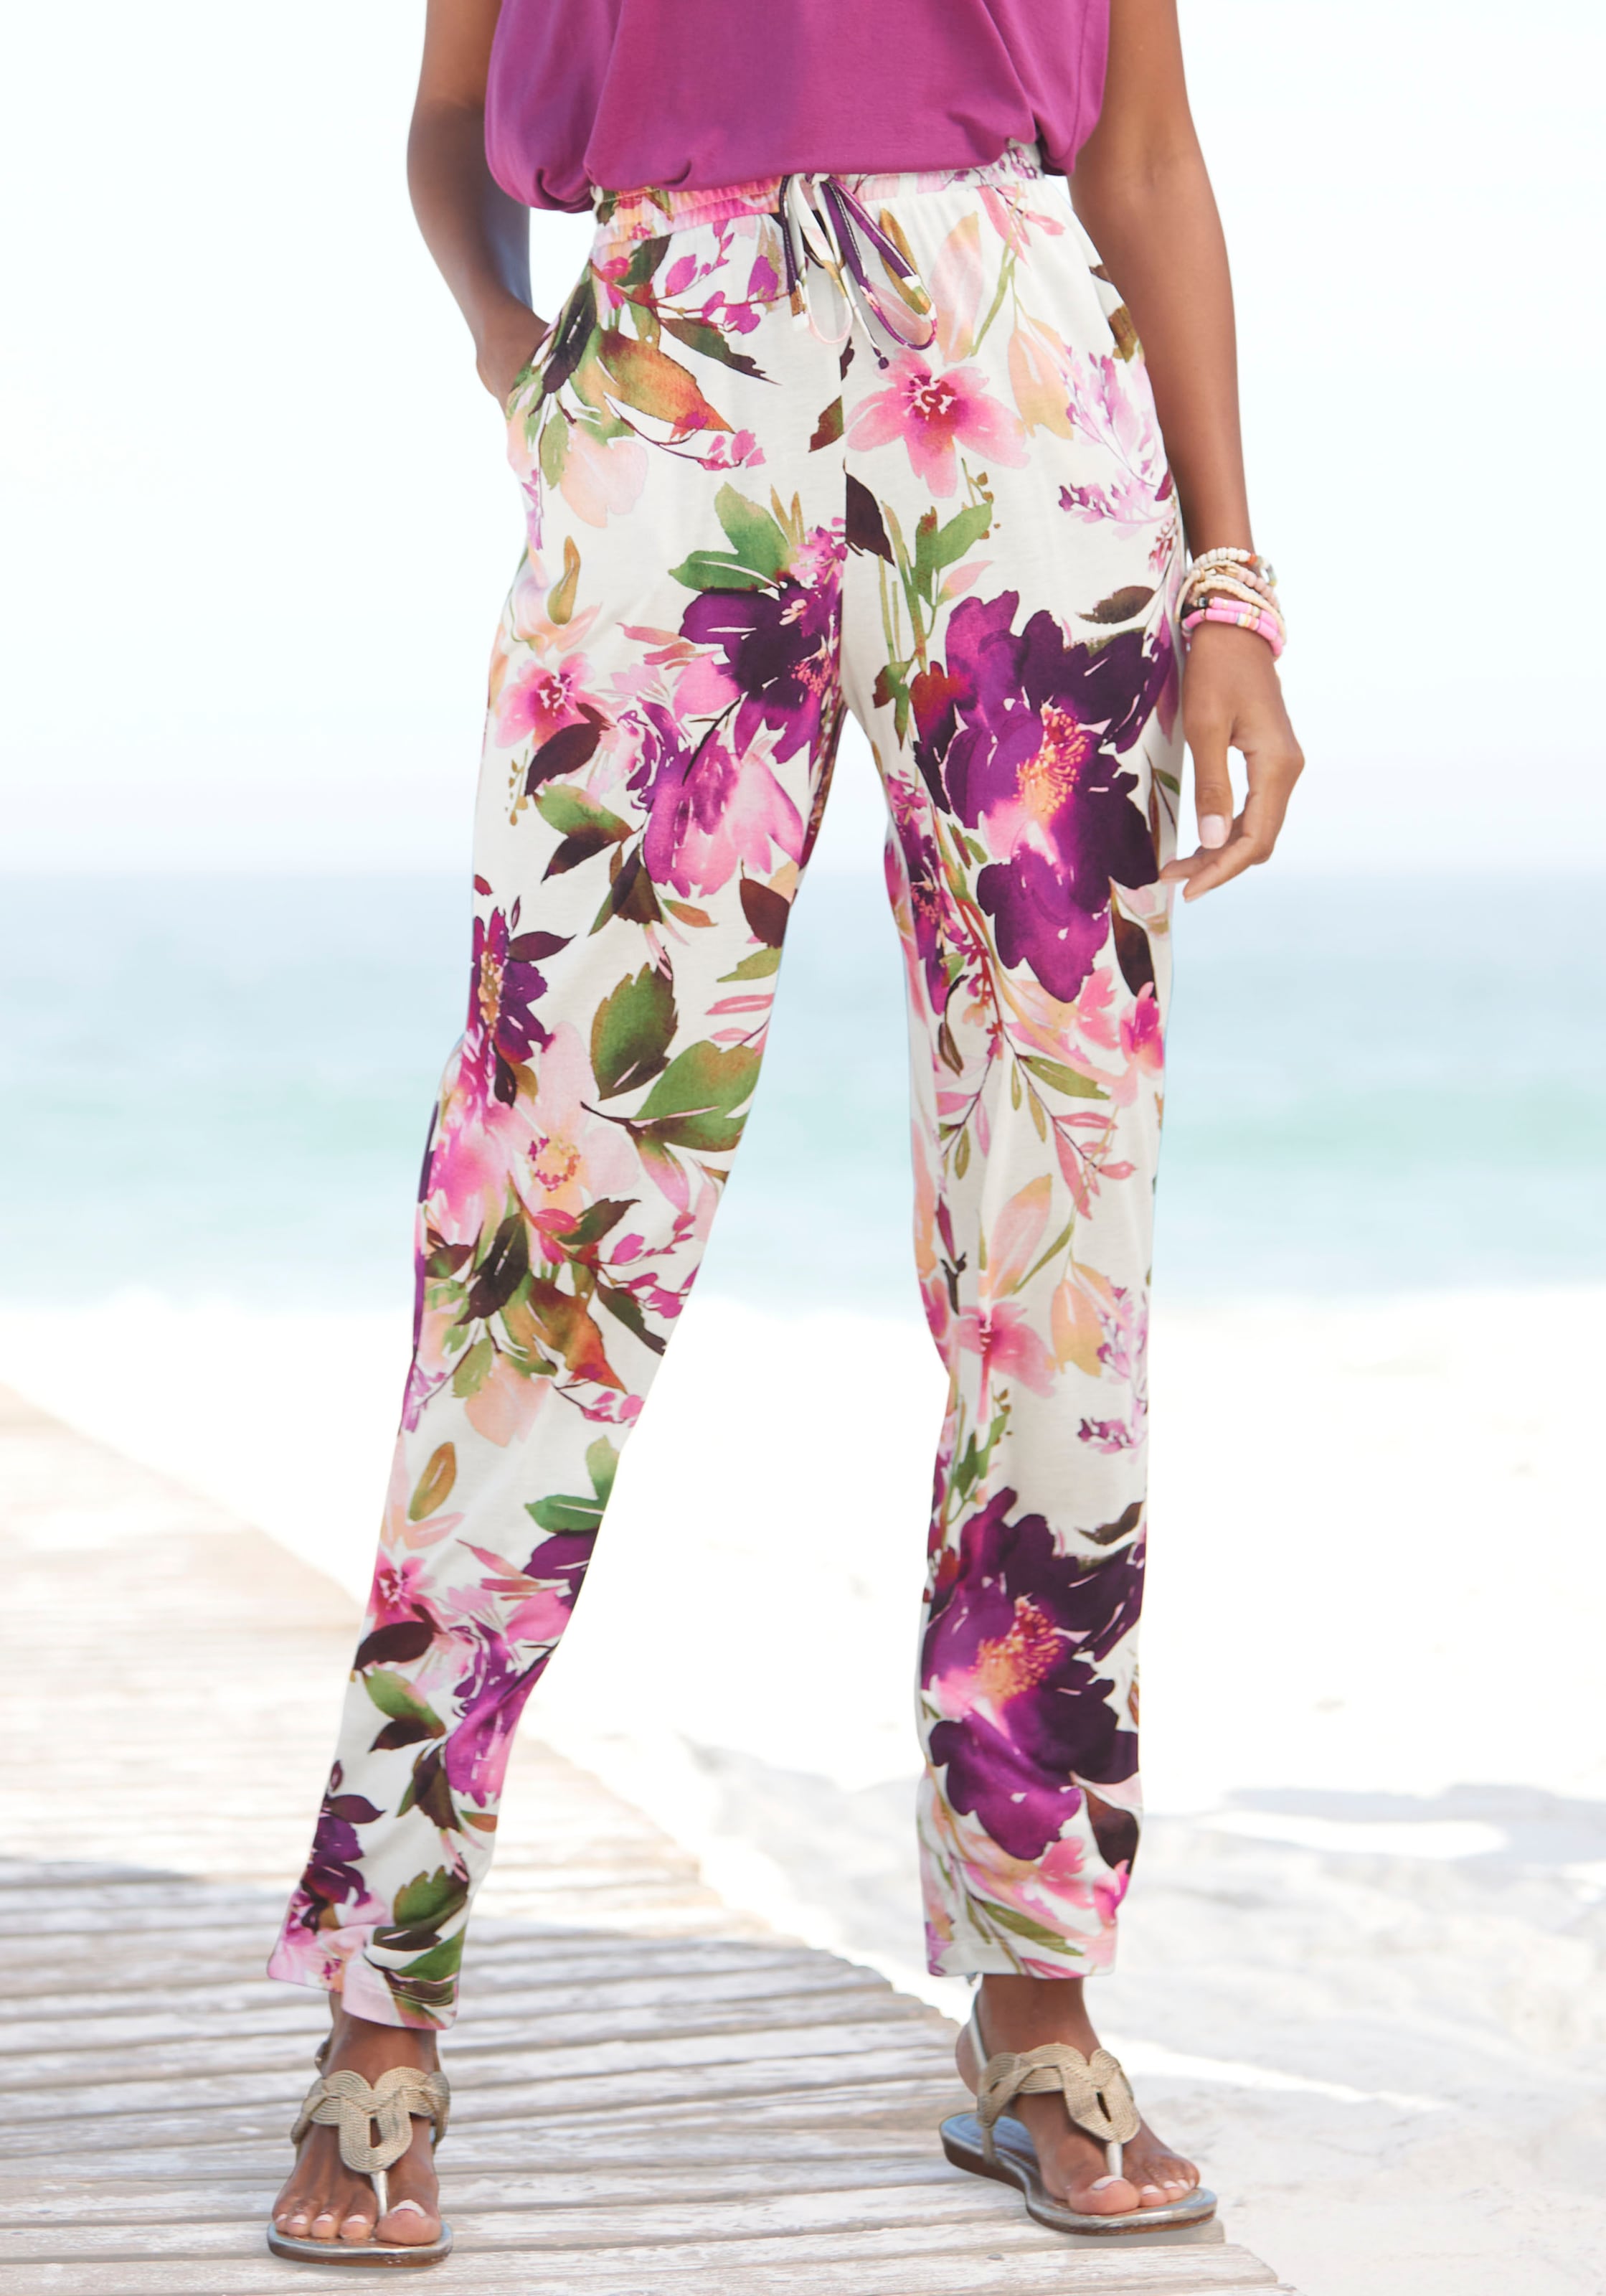 Beachtime Jerseyhose, mit Blumendruck elastischem Stoffhose, shoppen Bund, und frisch sommerlich